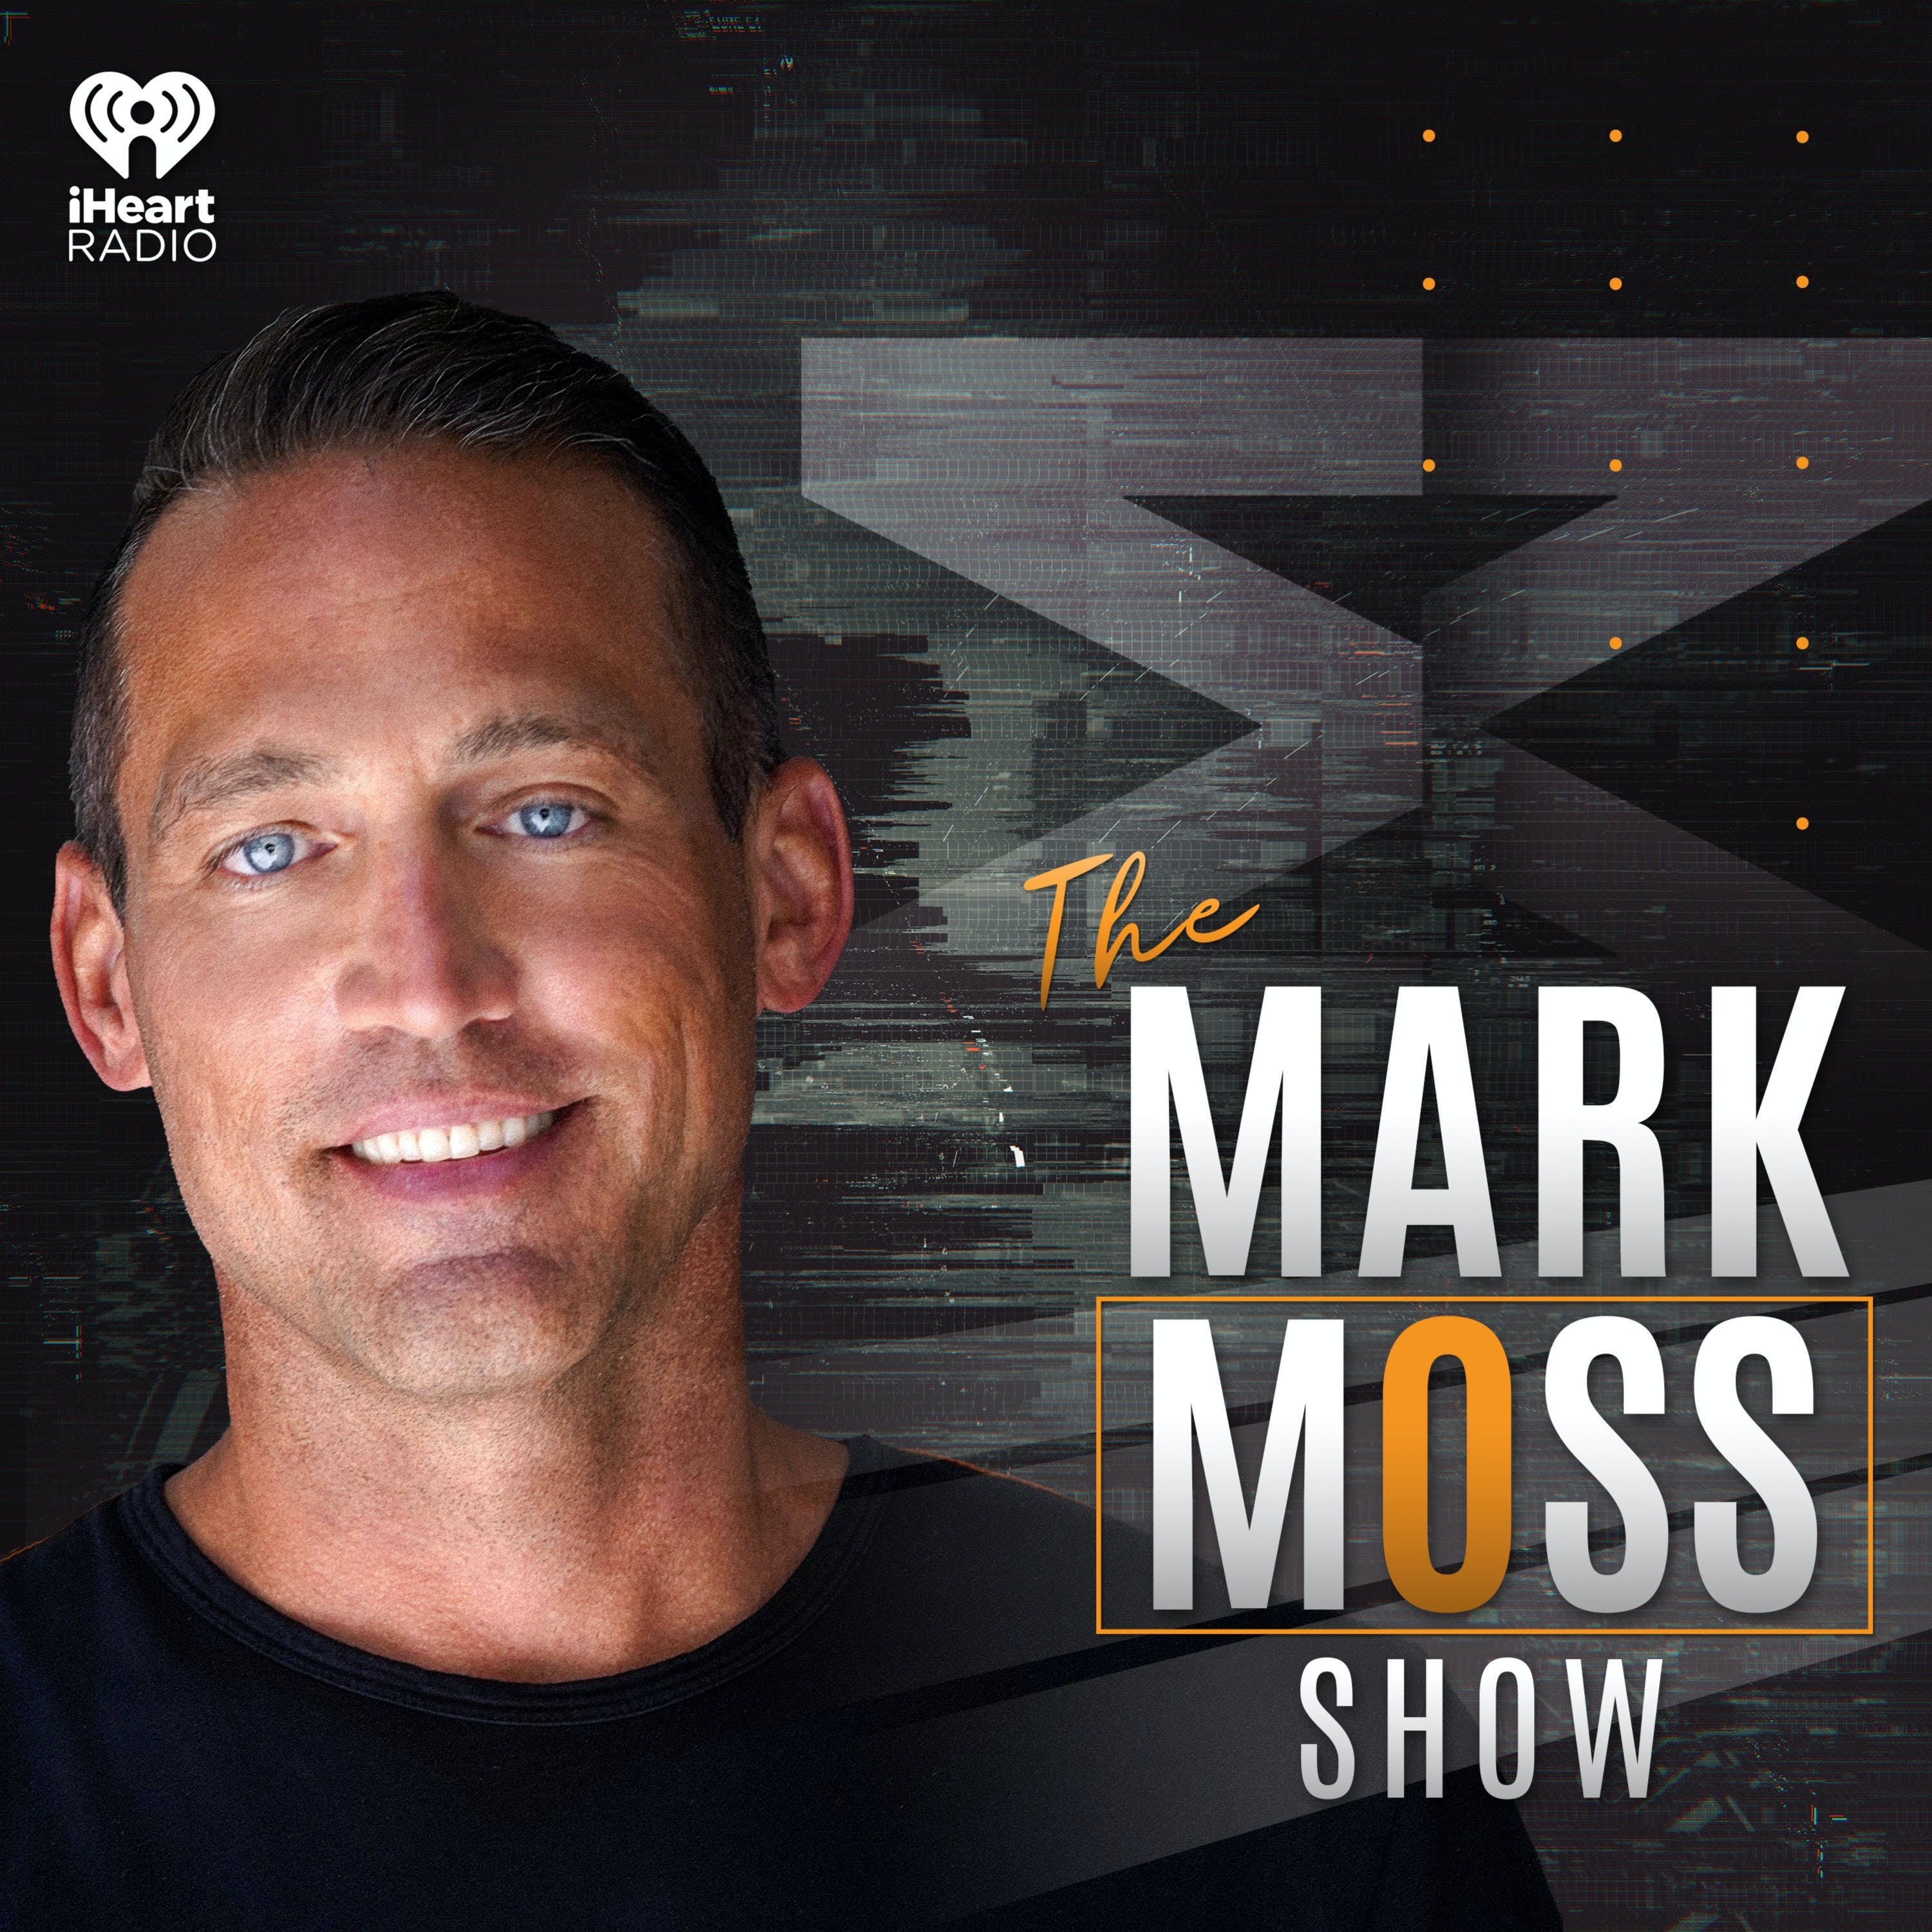 The Mark Moss Show Oct 22, 2021